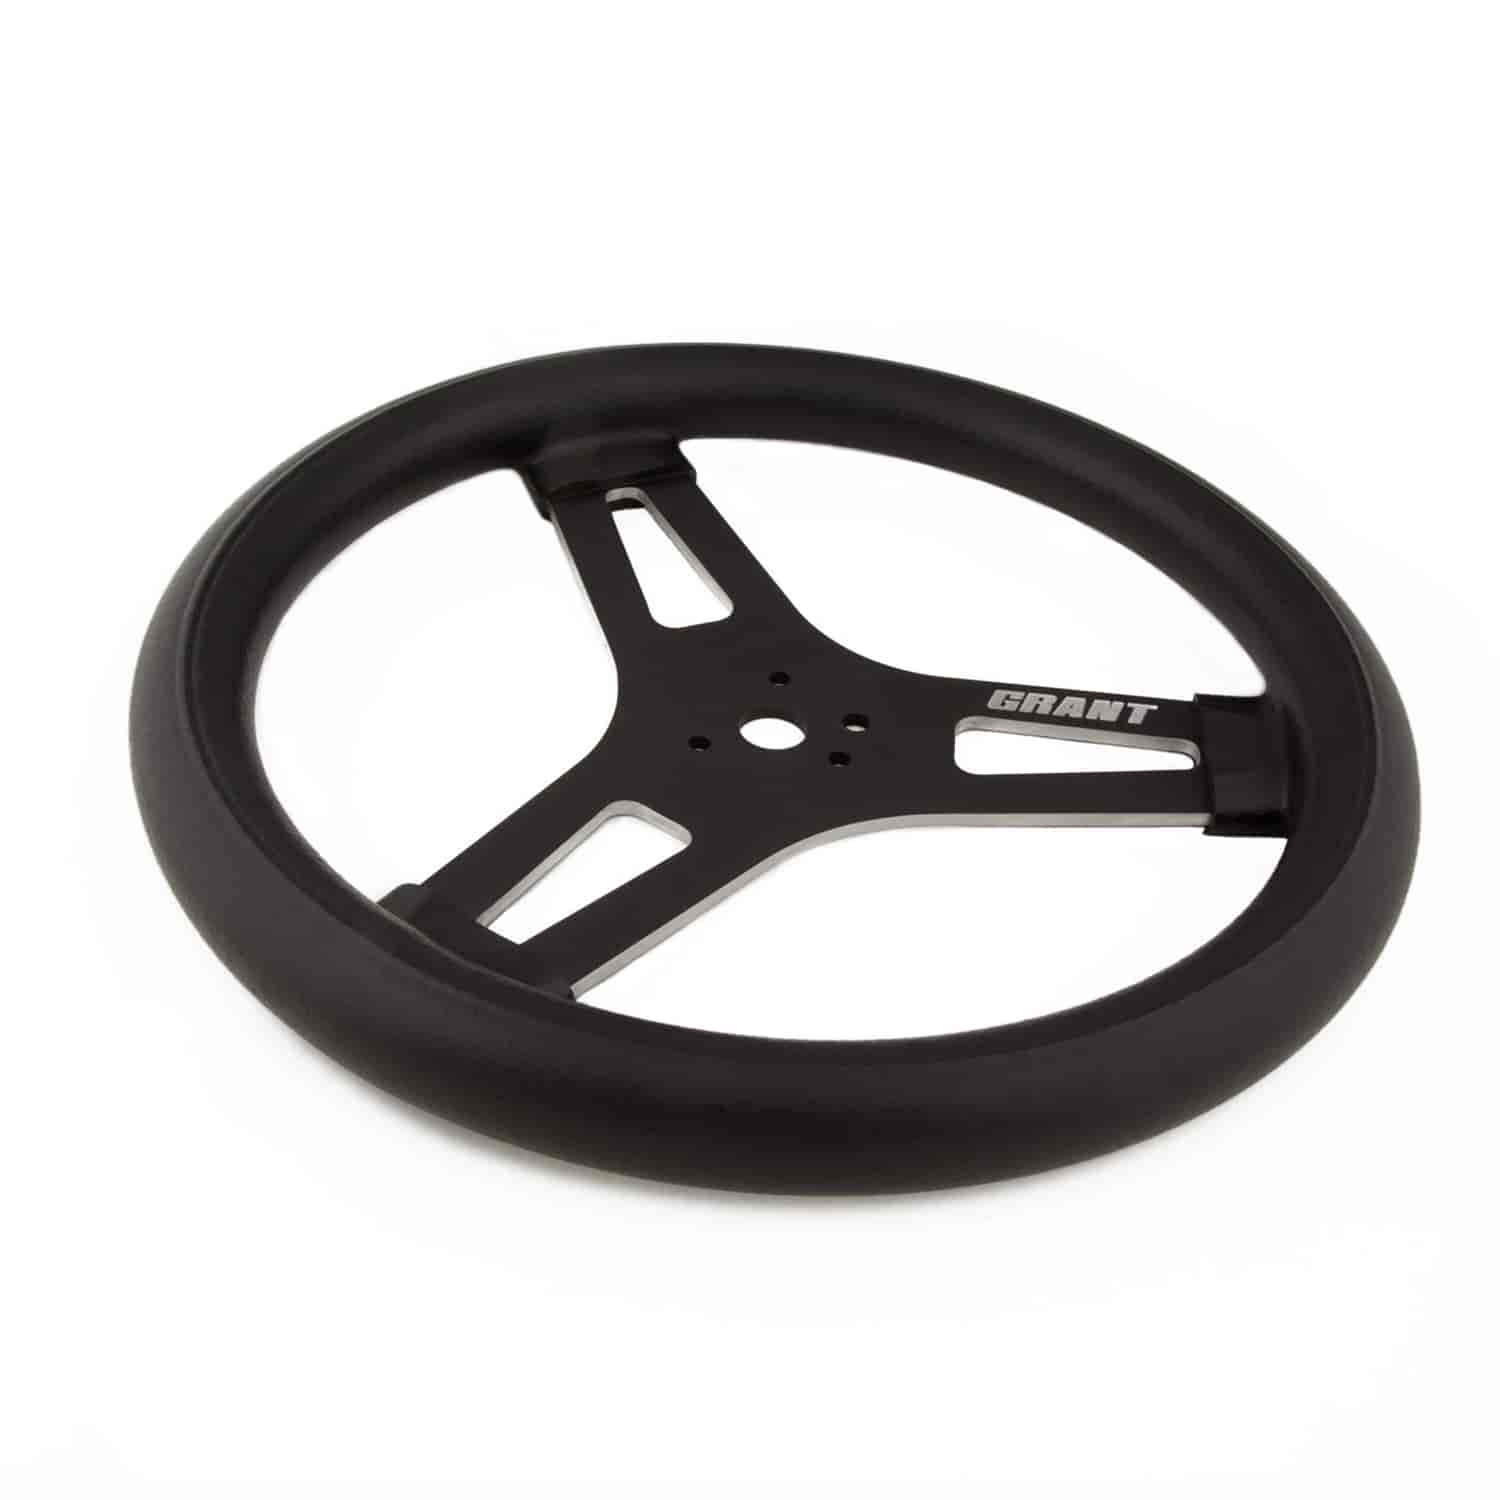 Racing Steering Wheel 13 in. Diameter